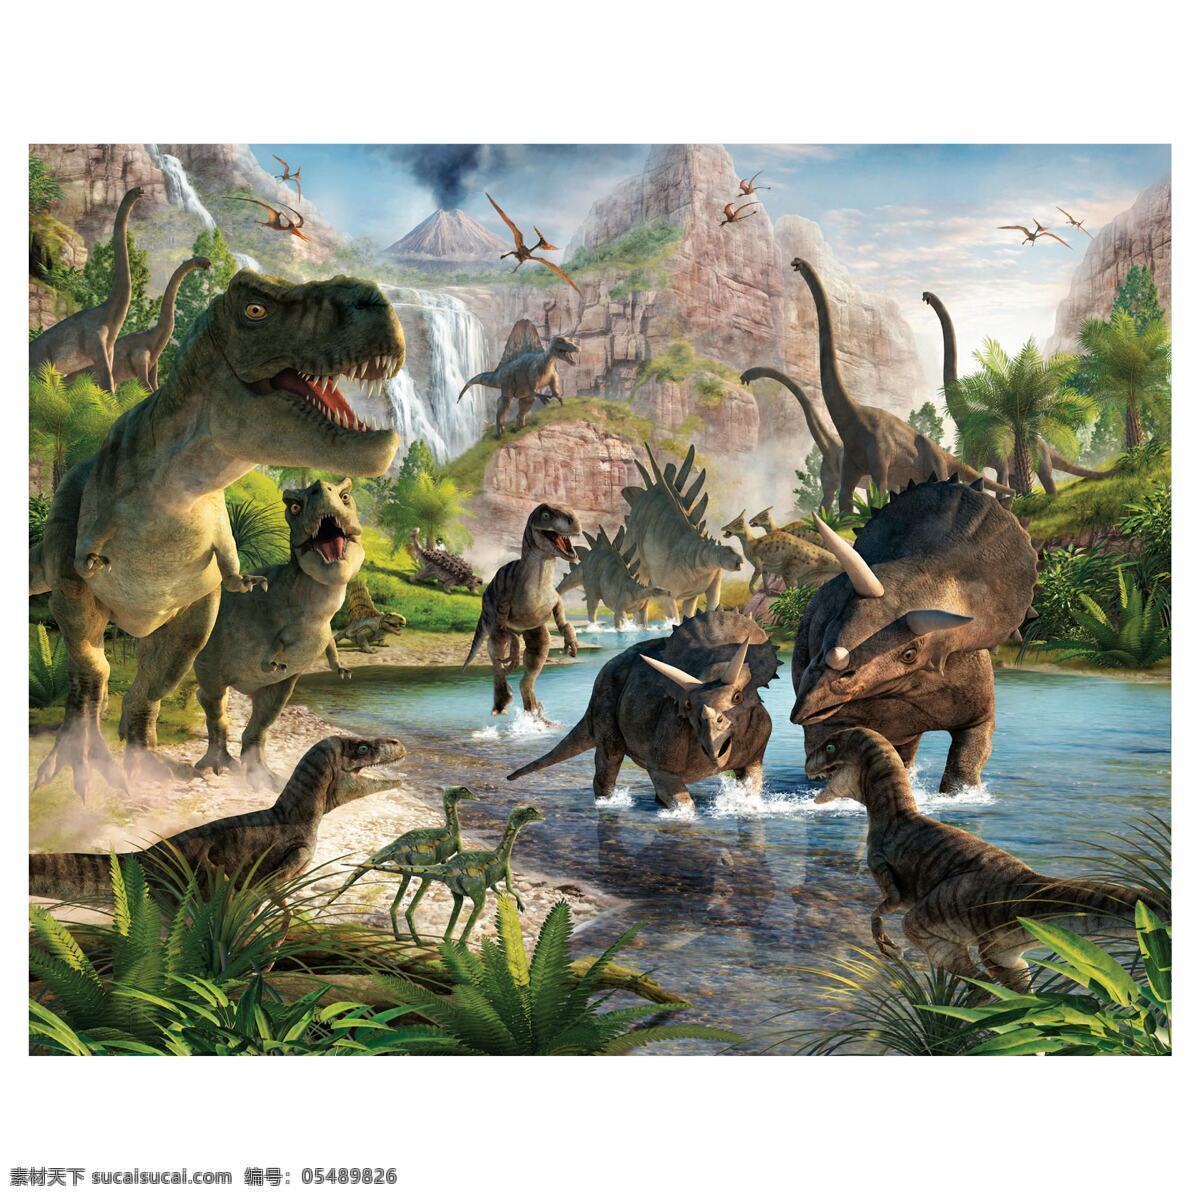 高清 恐龙世界 动物恐龙 飞龙 山脉 瀑布 树木